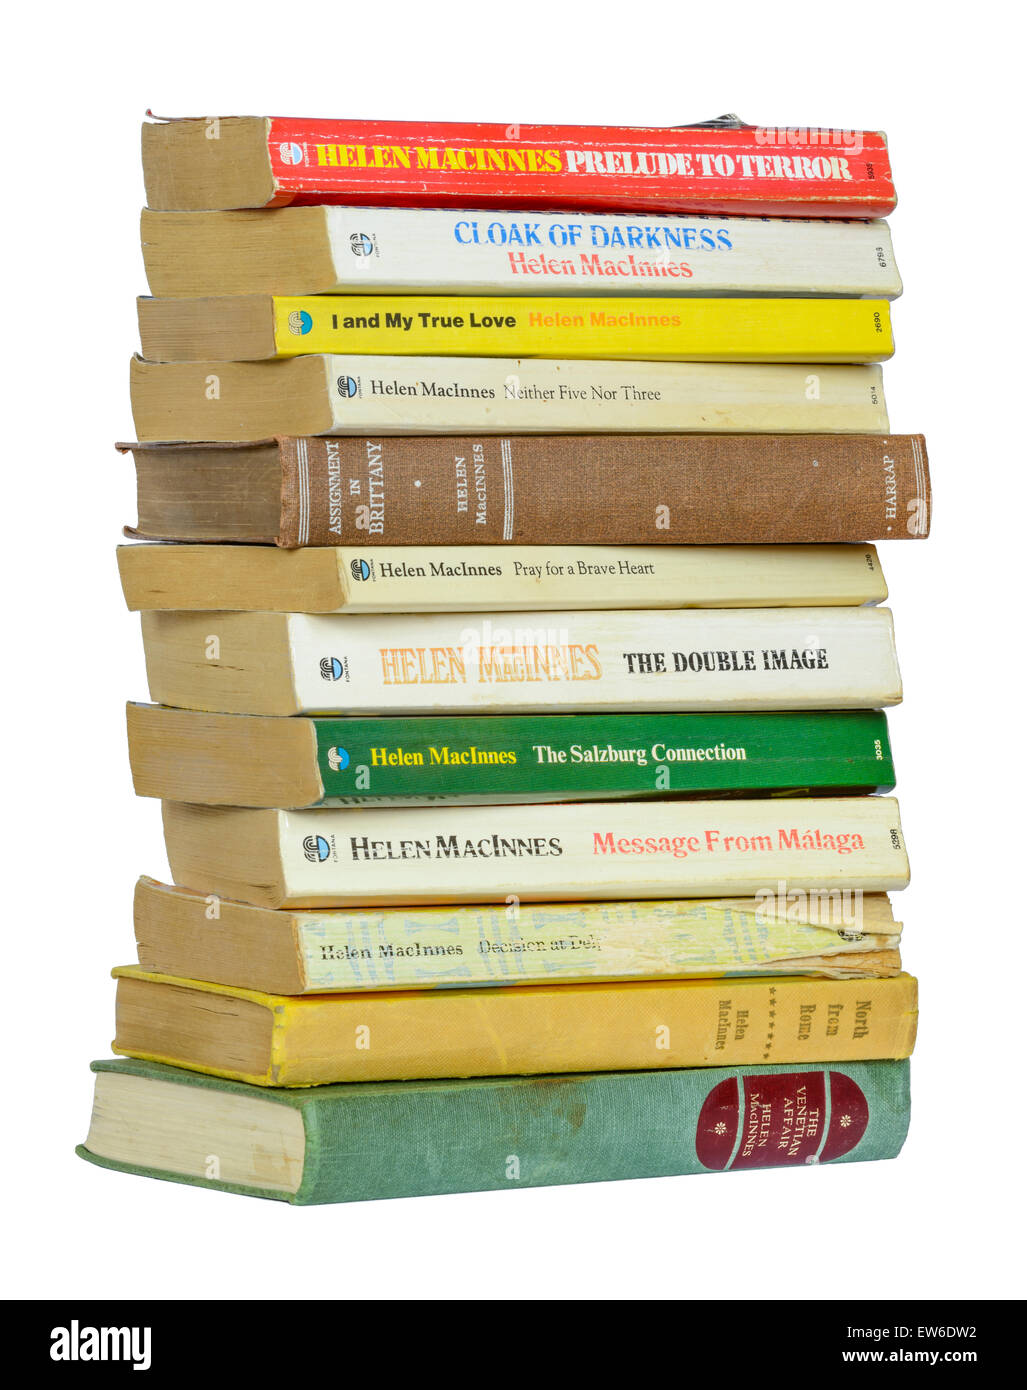 Pile de vieux livres de poche de l'auteur Helen MacInnes, sur fond blanc. Pile de romans empilés. Banque D'Images